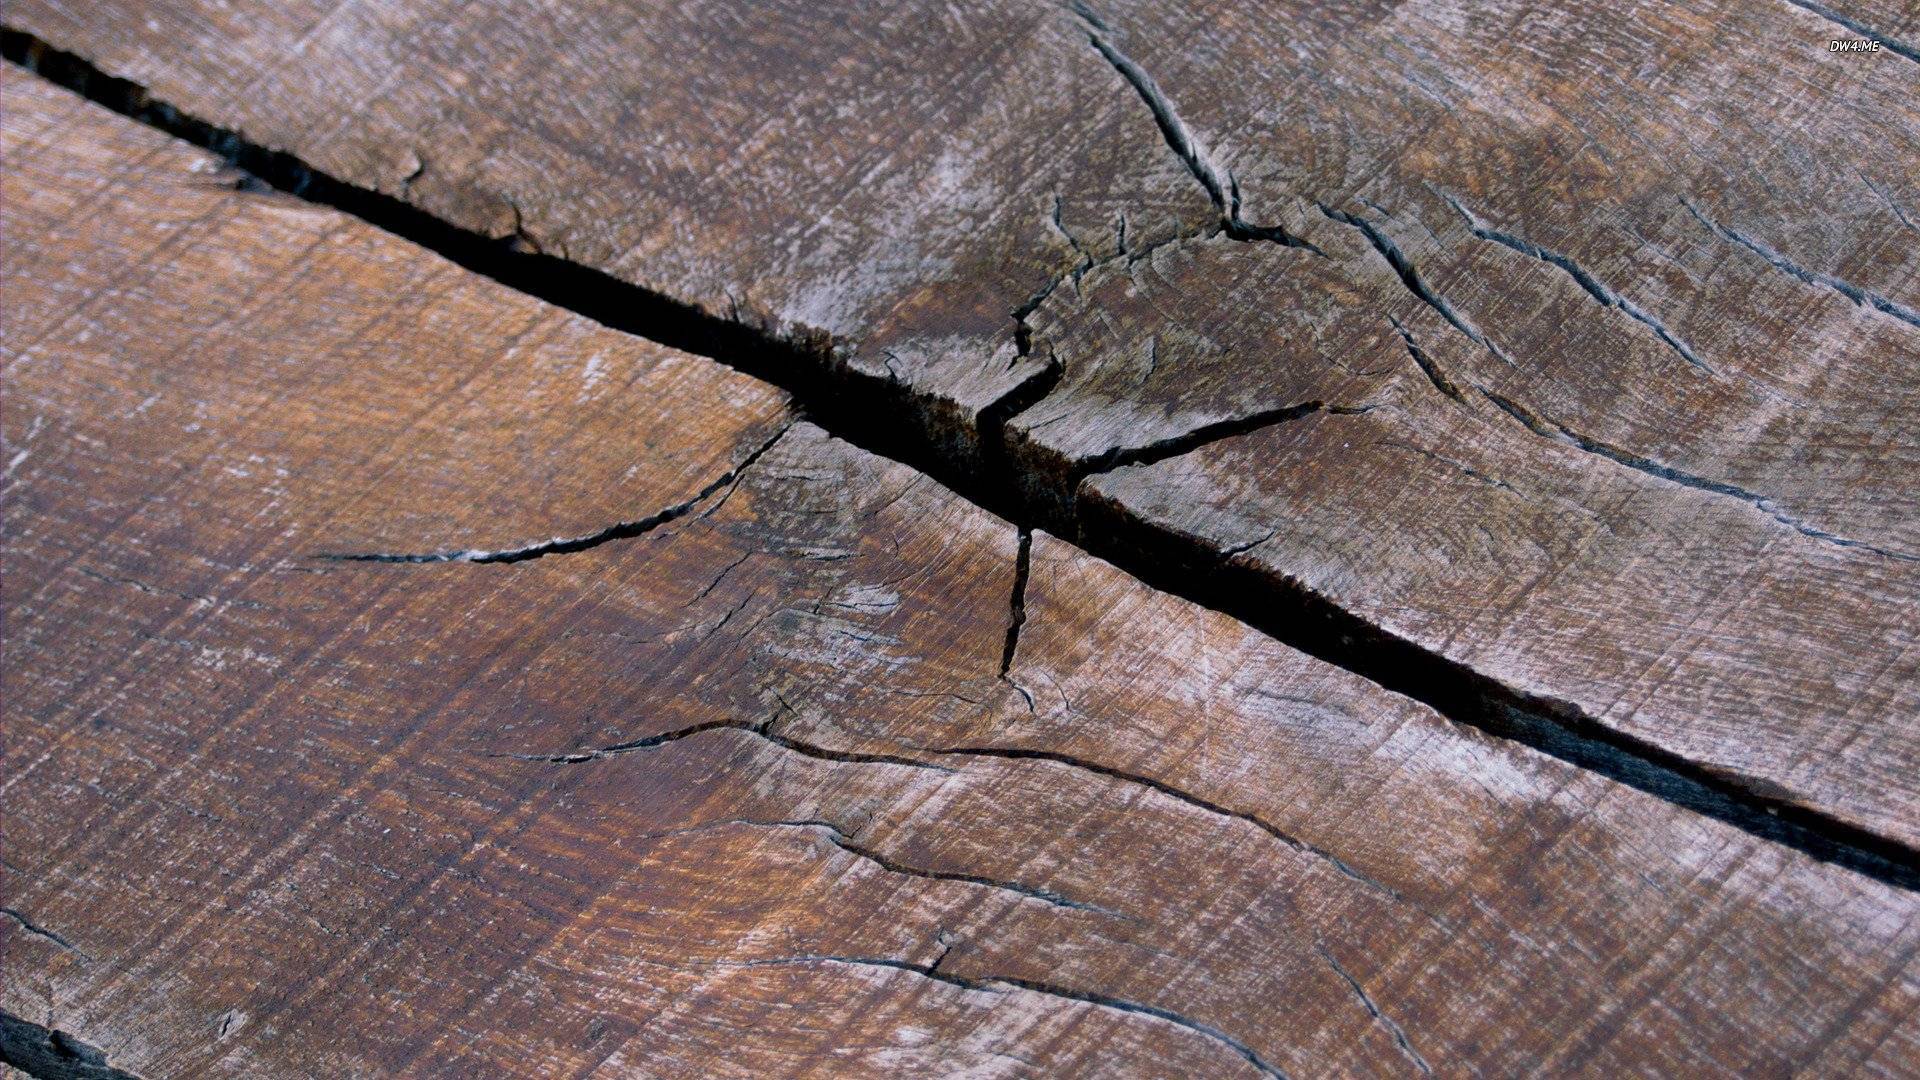 Как и чем заделывать трещины в древесине - 6 популярных способов